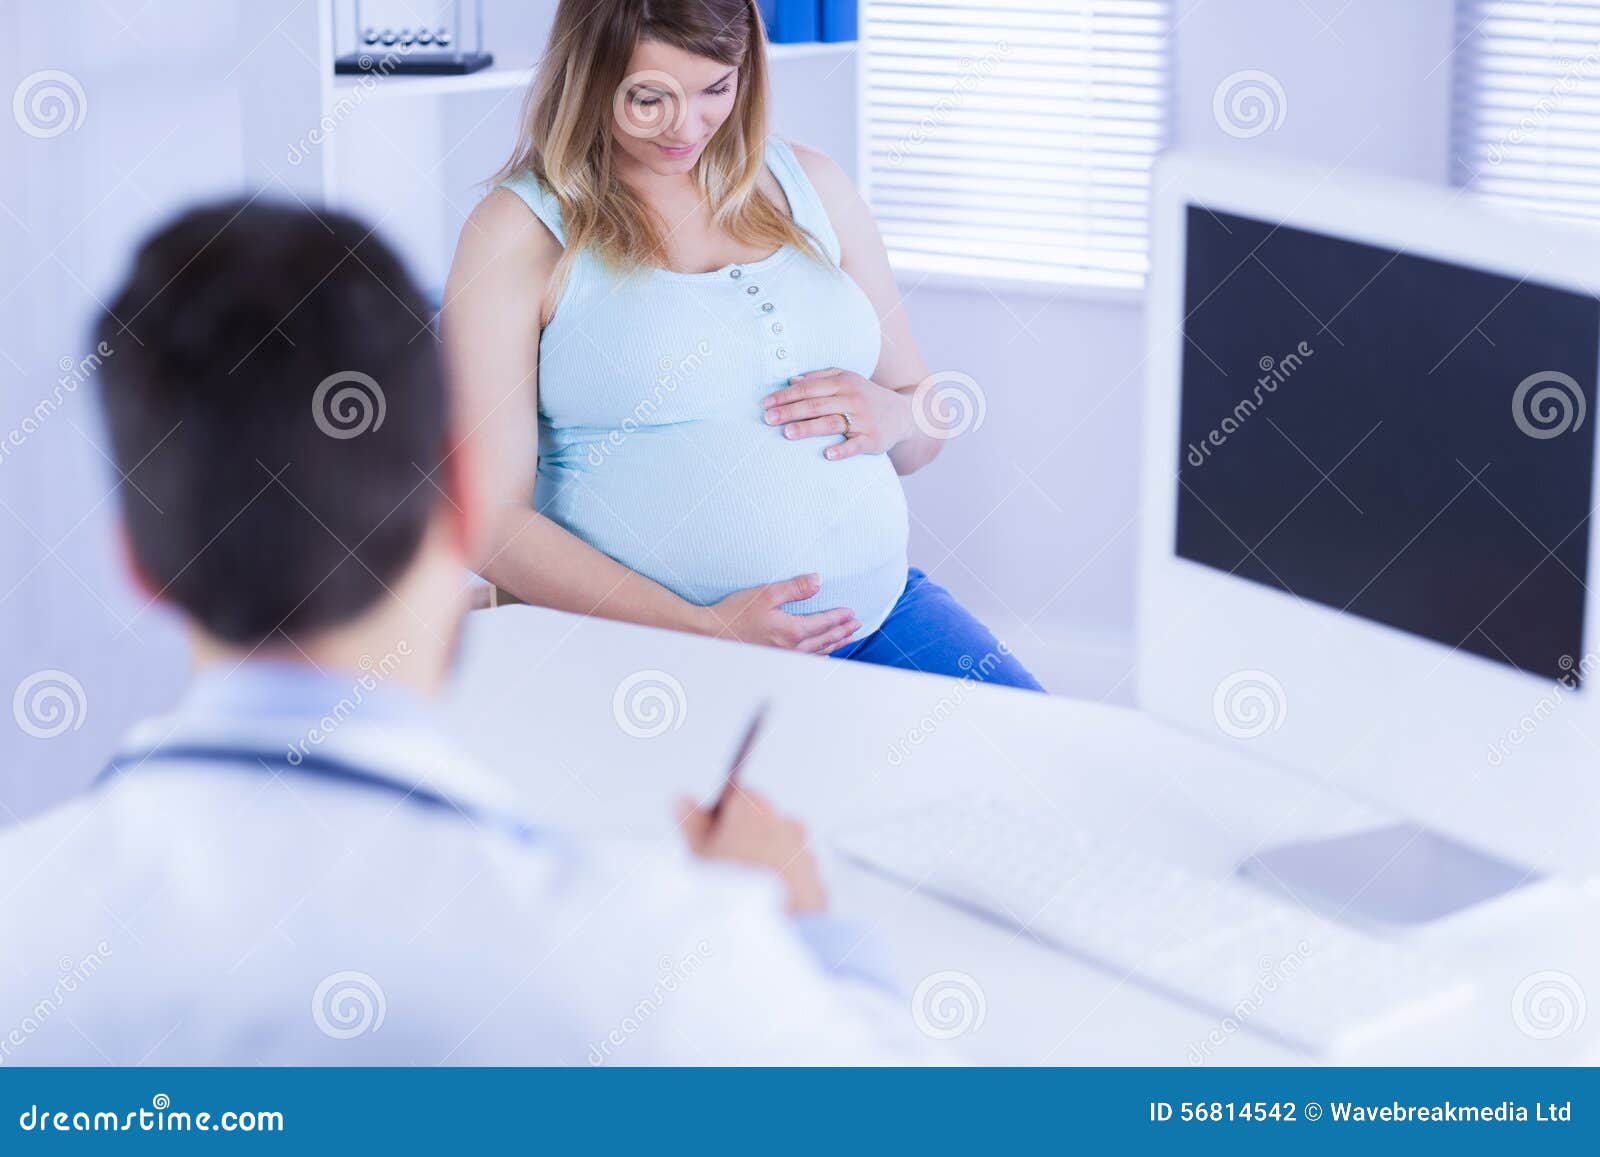 20 лет забеременела. Его беременные к. Фотографии к беременности суеверие. Дети беременные больных людей)..